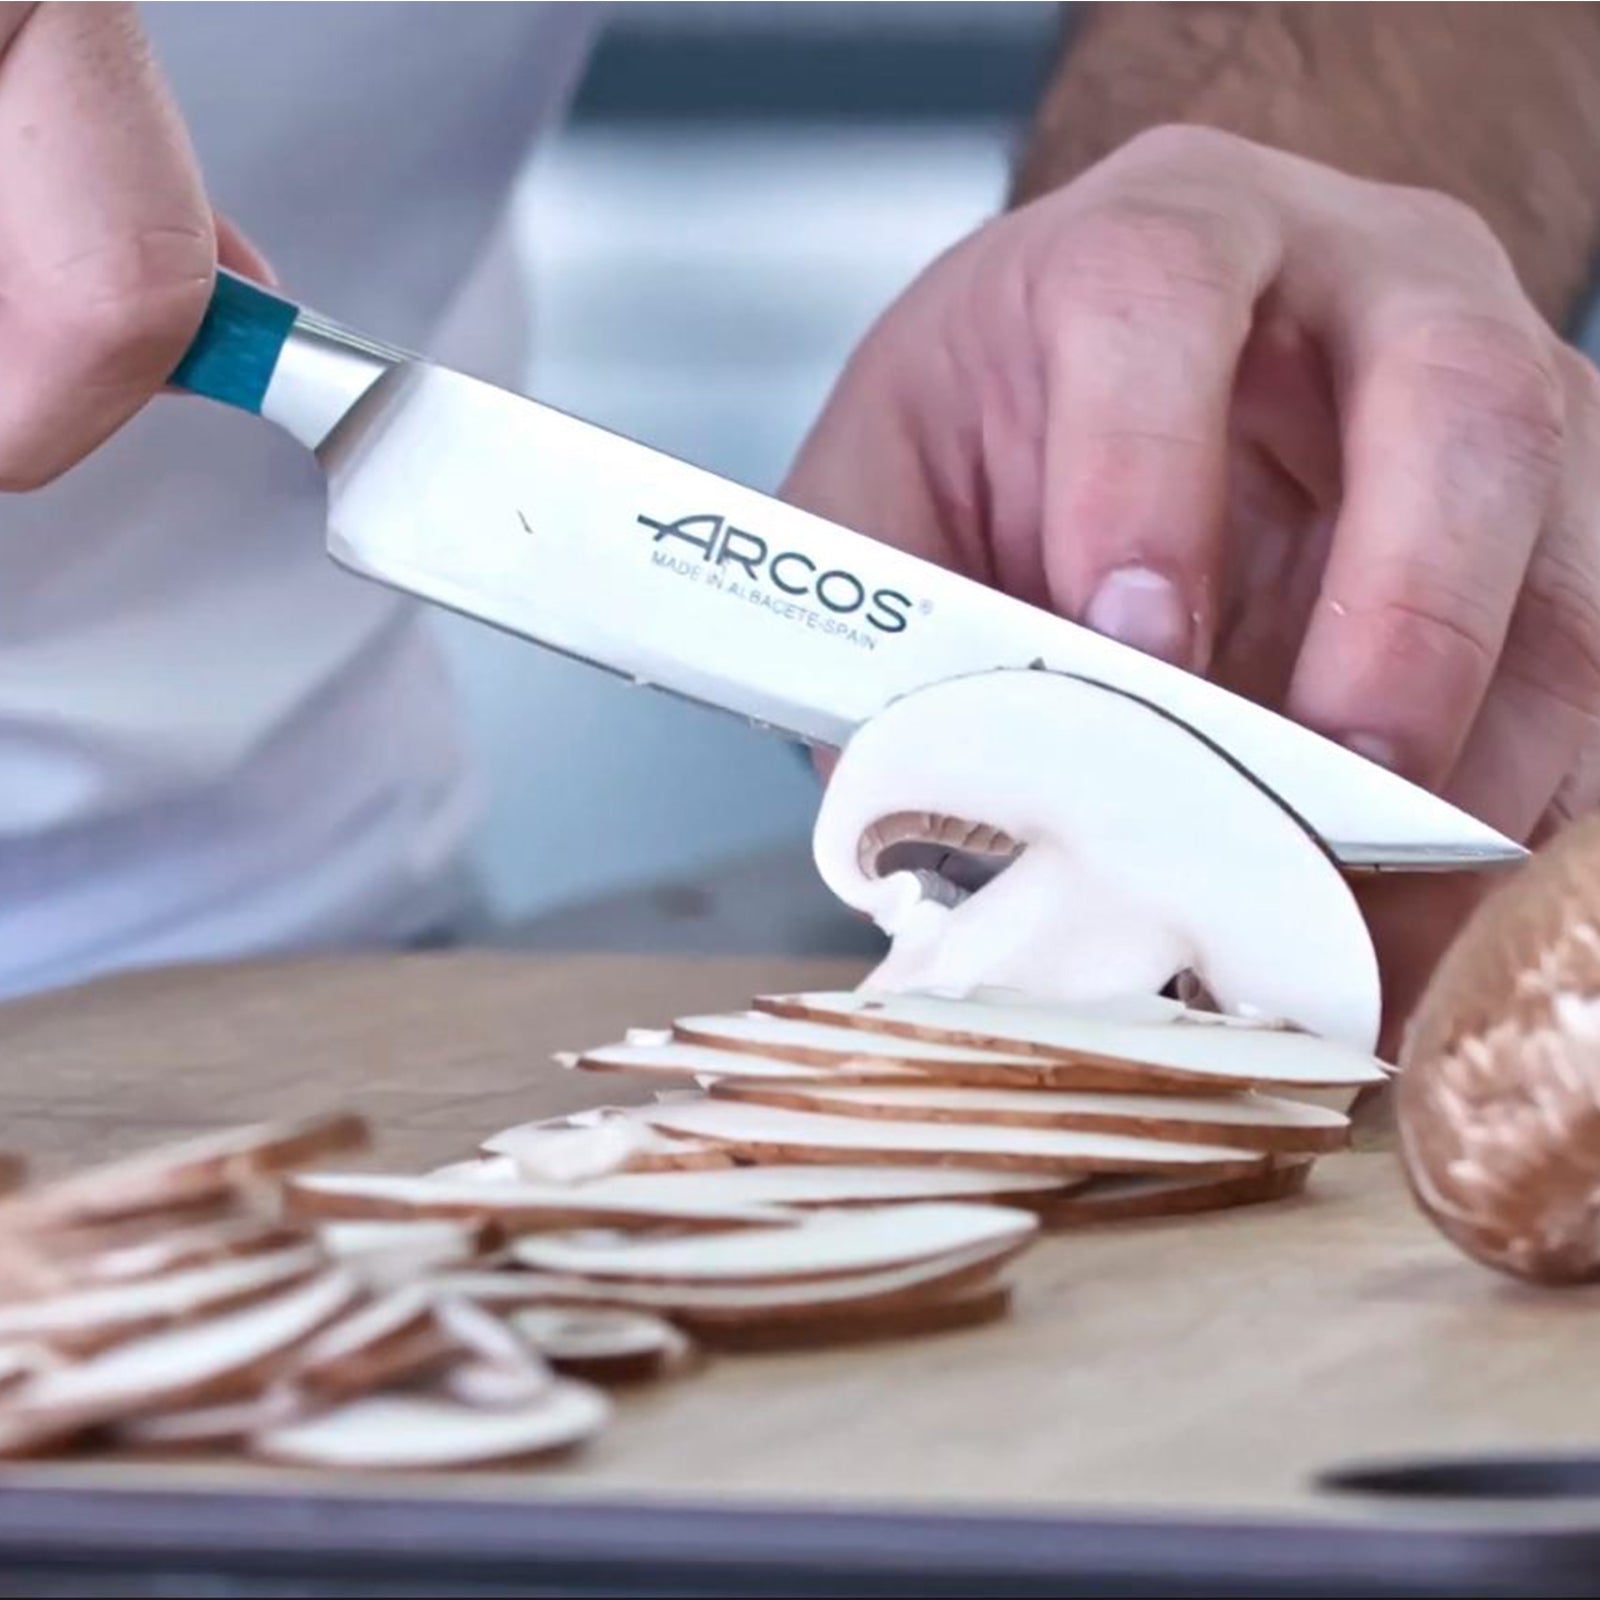 Arcos on X: Nuestros cuchillos están preparados para la temporada de  #calabazas 🧡 Cocinero Brooklyn -  Cocienro  Manhattan -  #FiloSeda #CuchillosArcos #Knife  #pumpkin #otono  / X